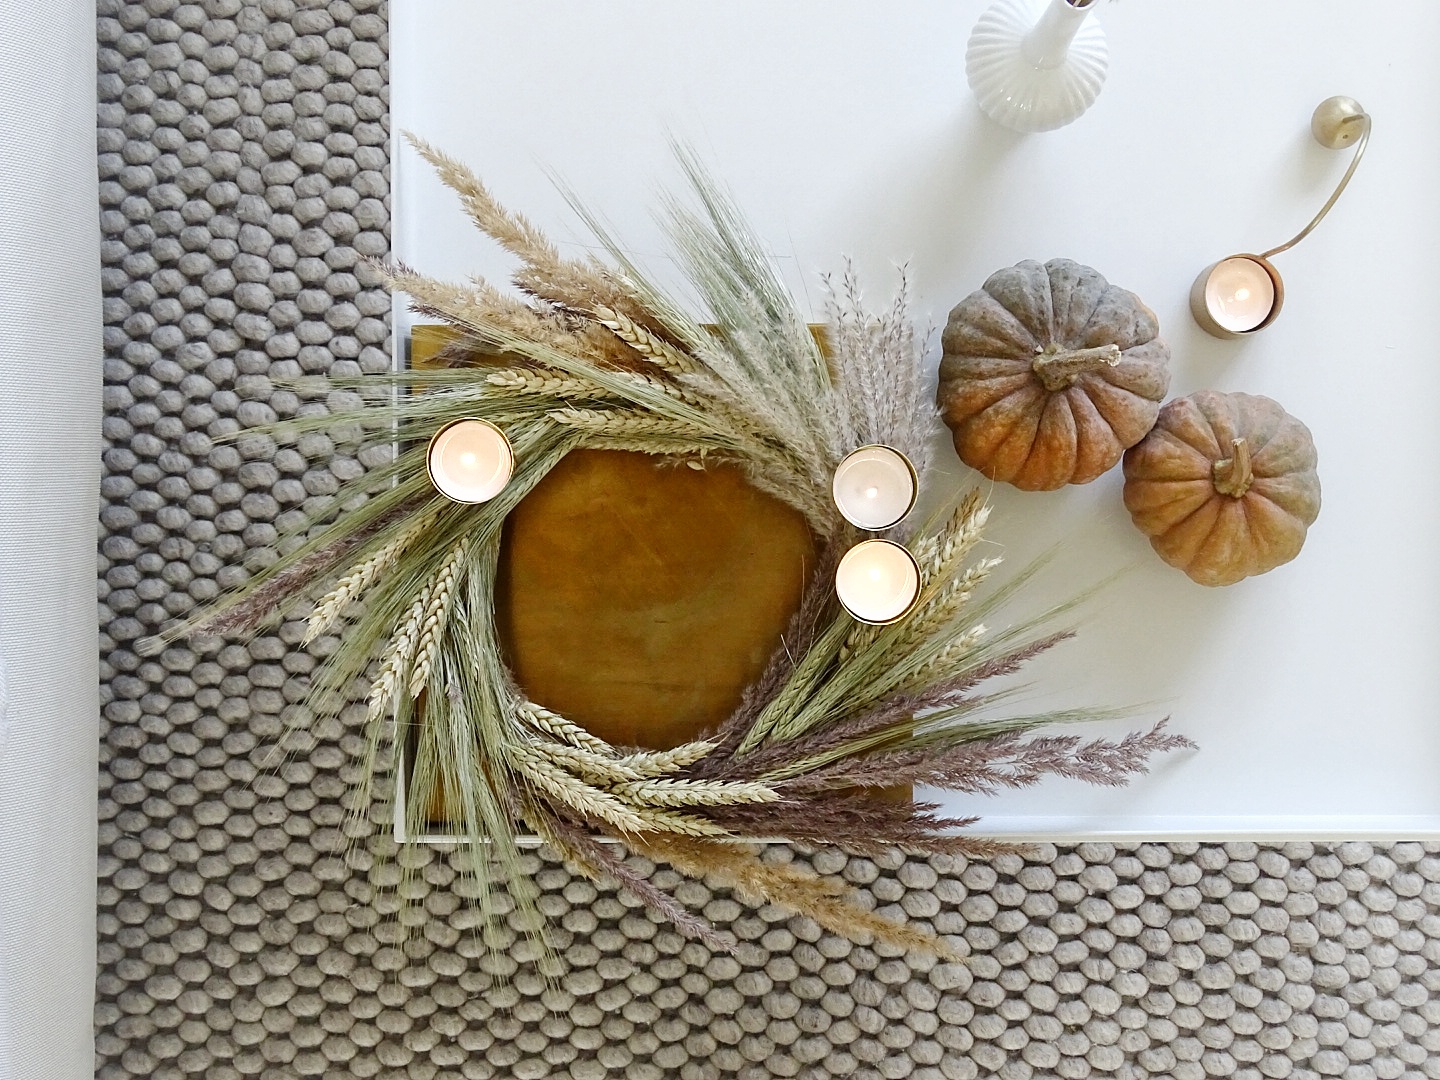 DIY-Herbstdeko: Kranz mit Gräsern, Getreide und Kerzen | mammilade.com